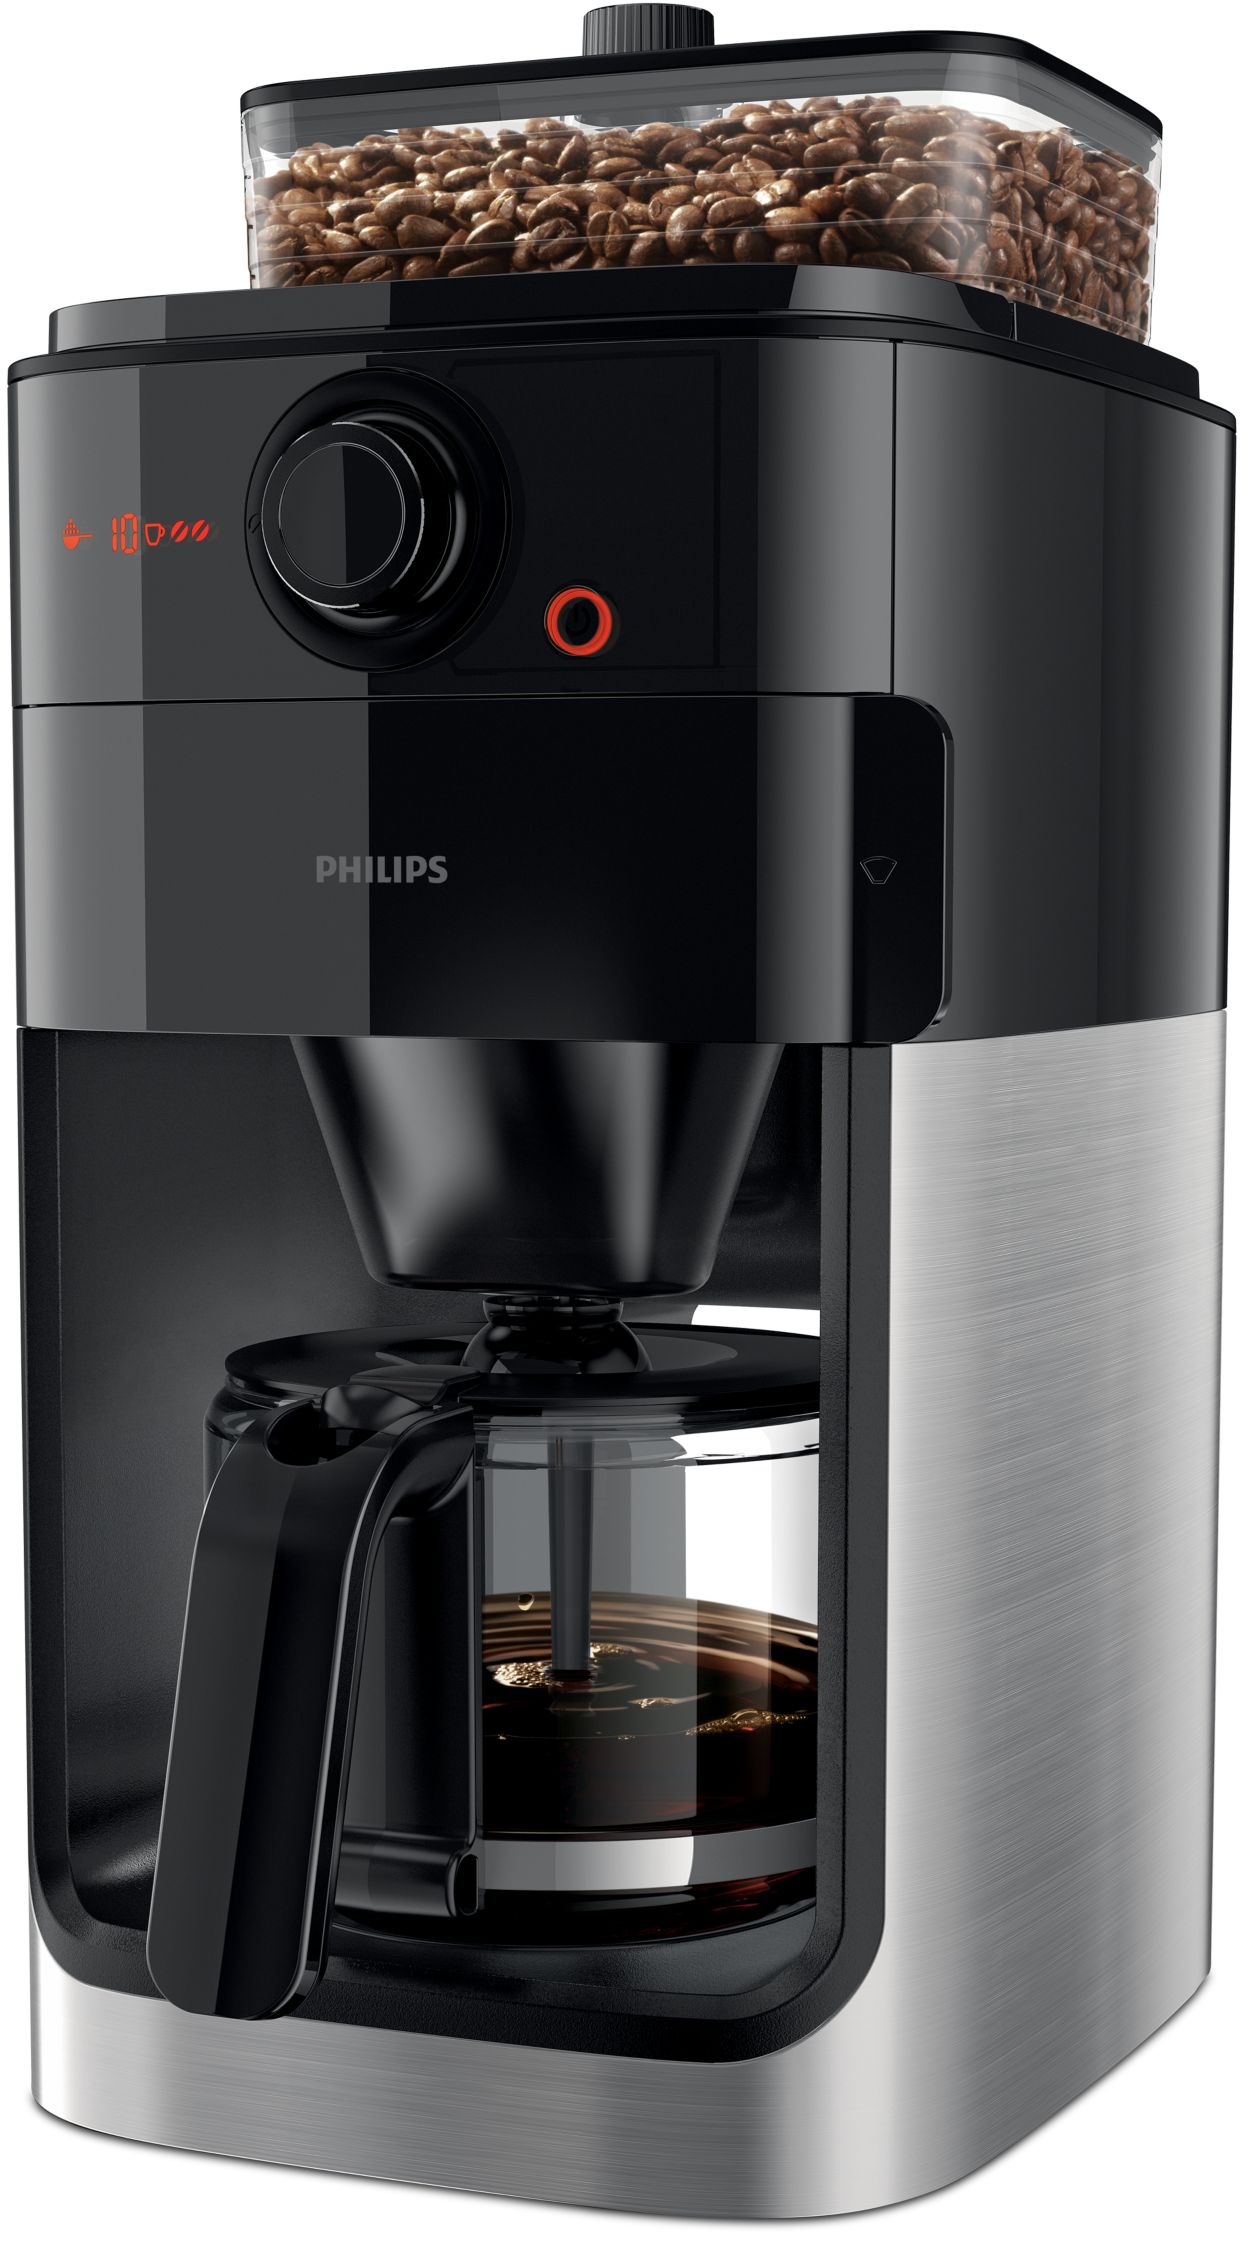 Duwen Alfabet waardigheid Grind & Brew Koffiezetapparaat met druppelfilter, 1,2 liter HD7767/00 |  Philips